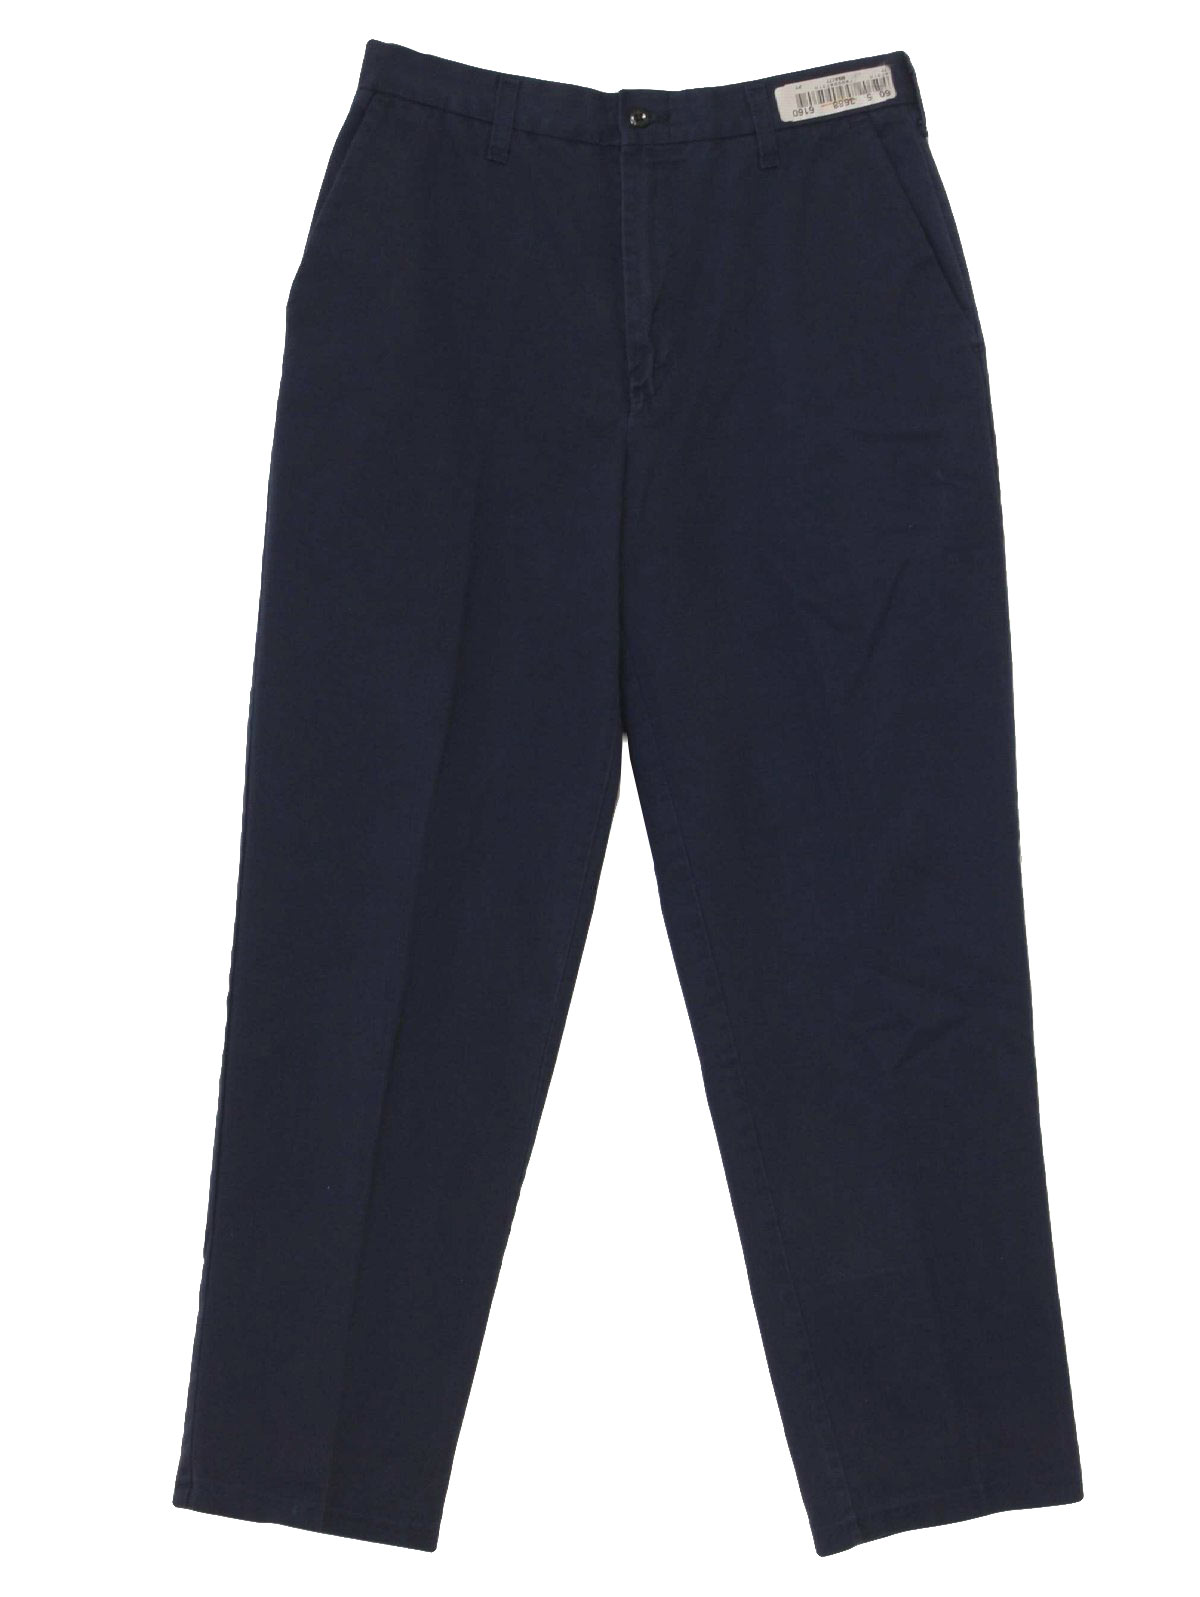 Retro 90s Pants (Cintas) : 90s -Cintas- Mens navy blue polyester cotton ...